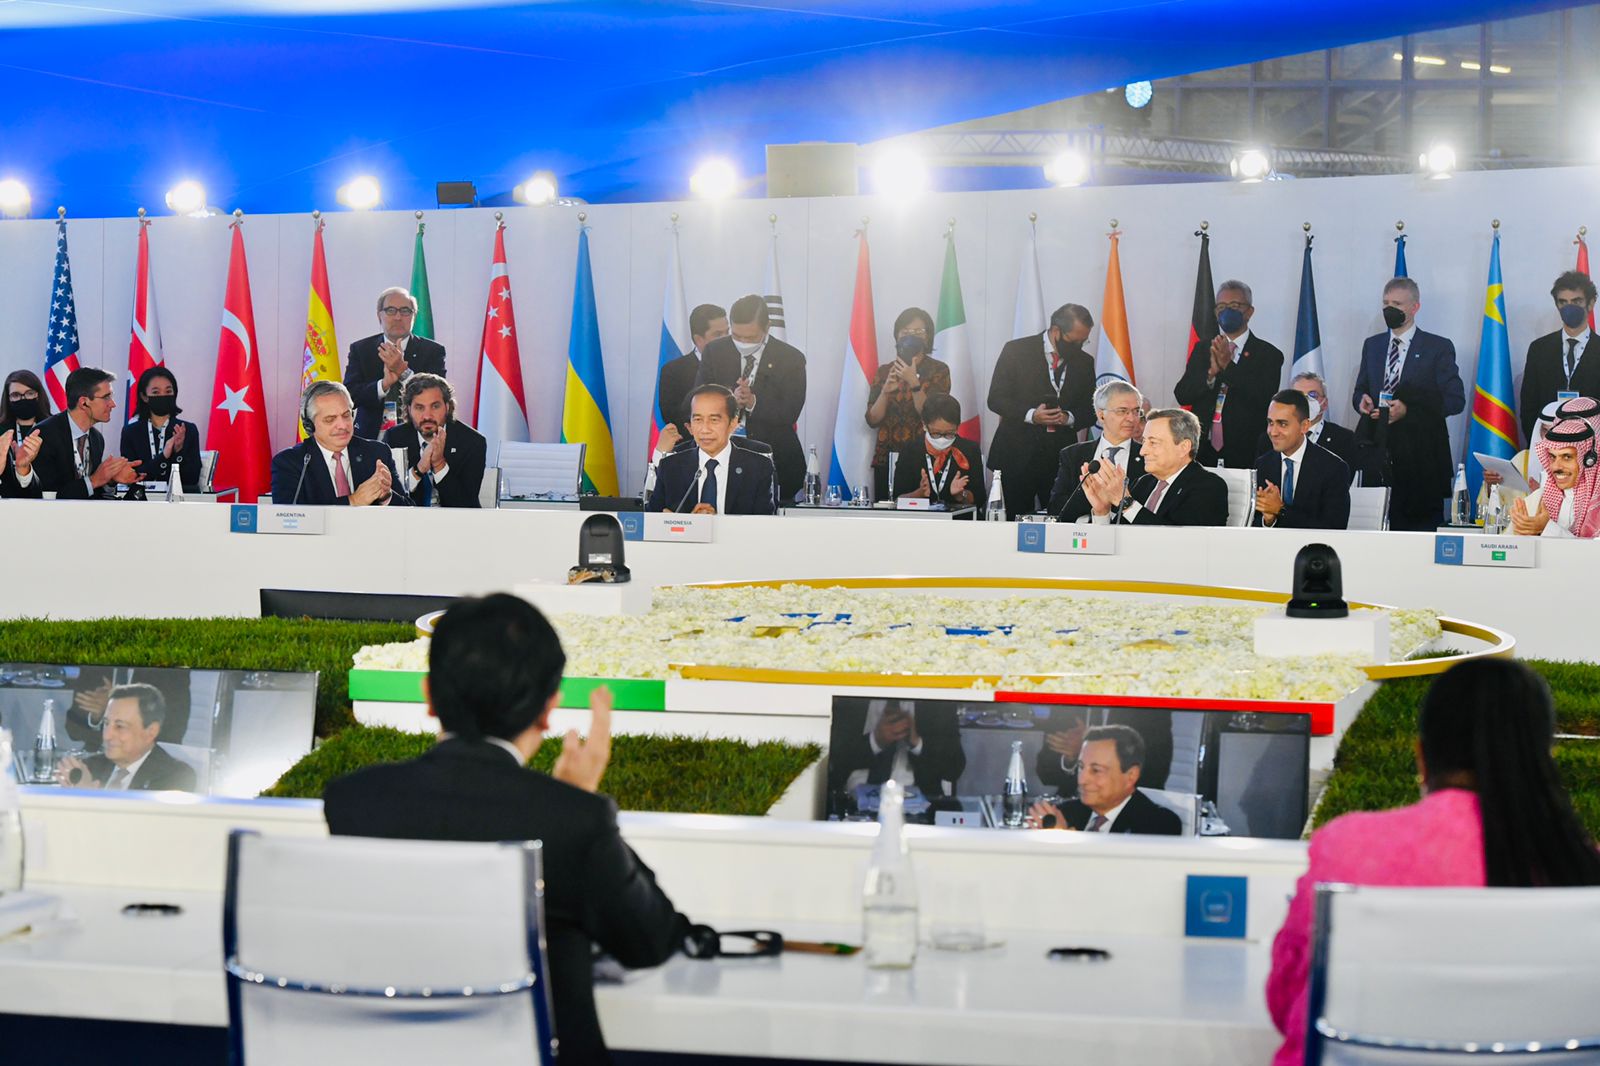 Mengenal G20​: Sejarah, Negara Anggota, hingga Manfaat untuk Indonesia